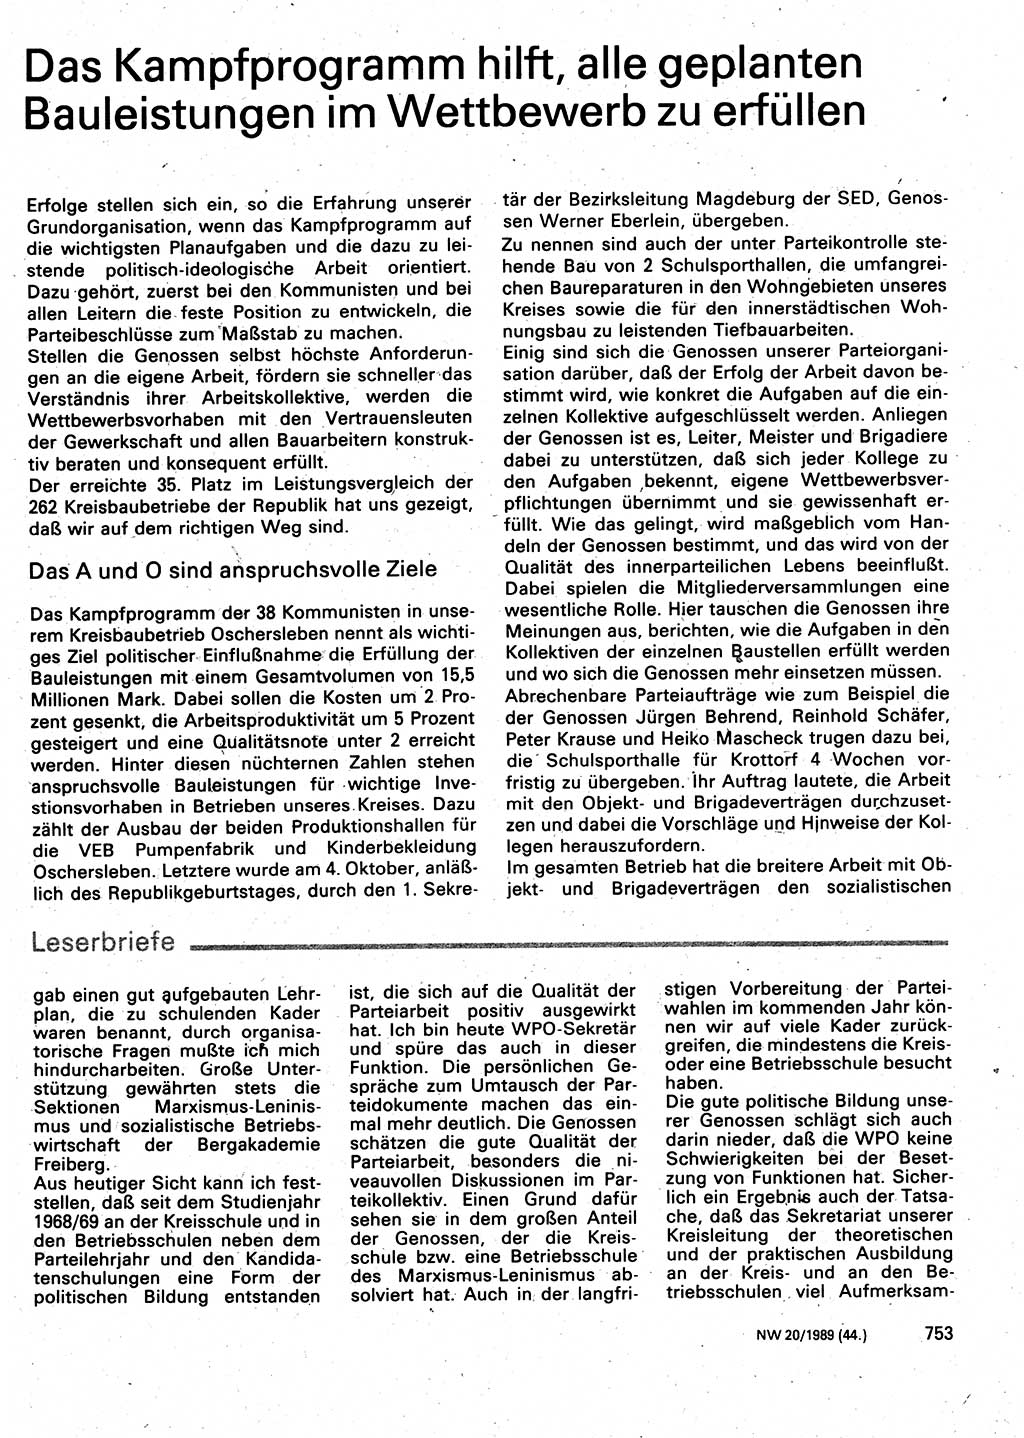 Neuer Weg (NW), Organ des Zentralkomitees (ZK) der SED (Sozialistische Einheitspartei Deutschlands) für Fragen des Parteilebens, 44. Jahrgang [Deutsche Demokratische Republik (DDR)] 1989, Seite 753 (NW ZK SED DDR 1989, S. 753)